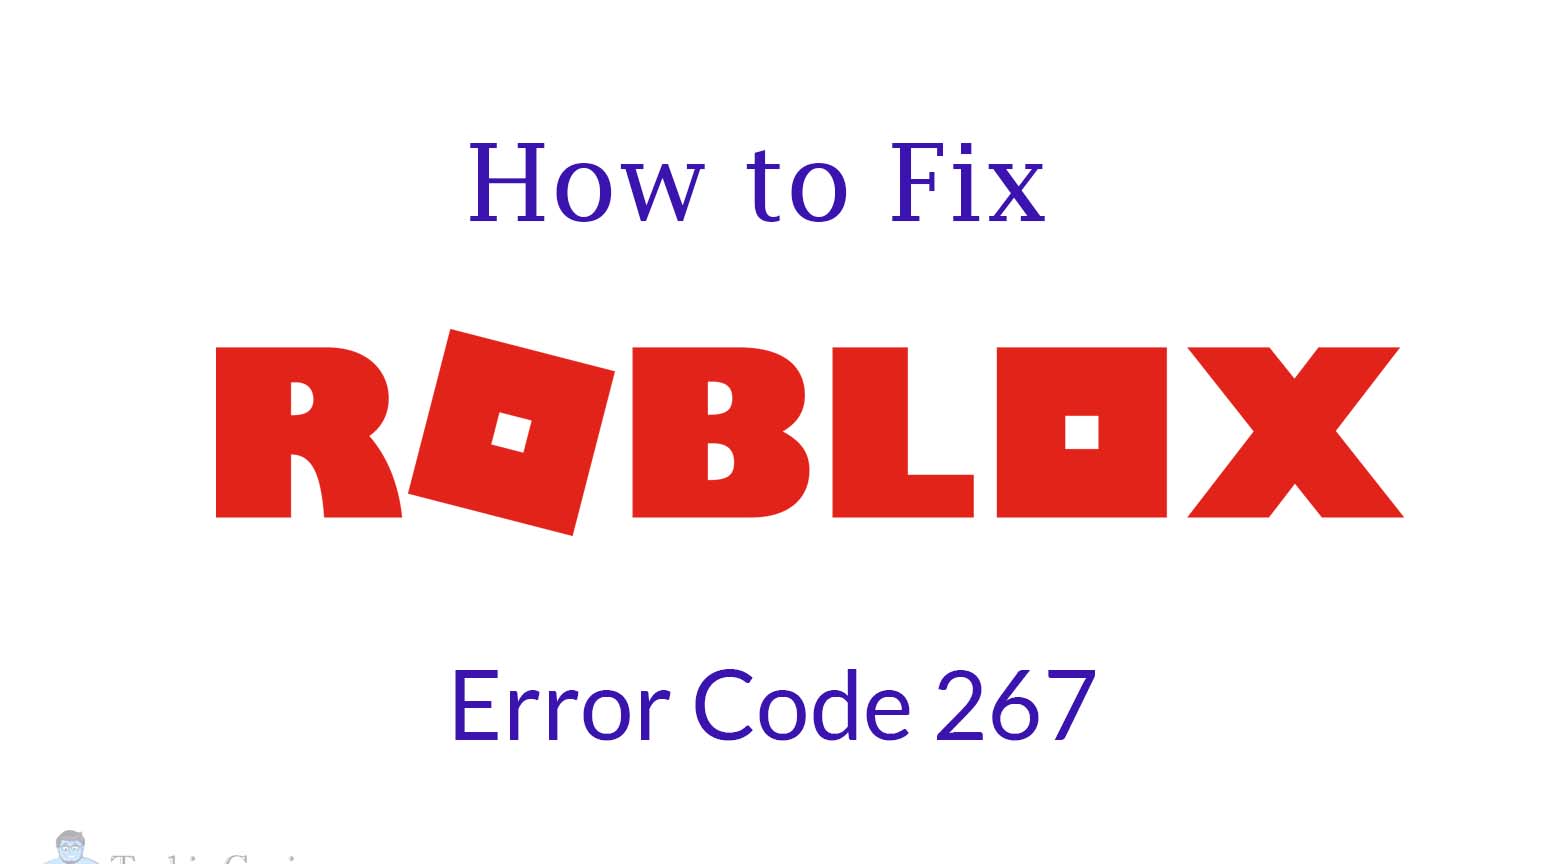 How To Fix Roblox Error Code 267